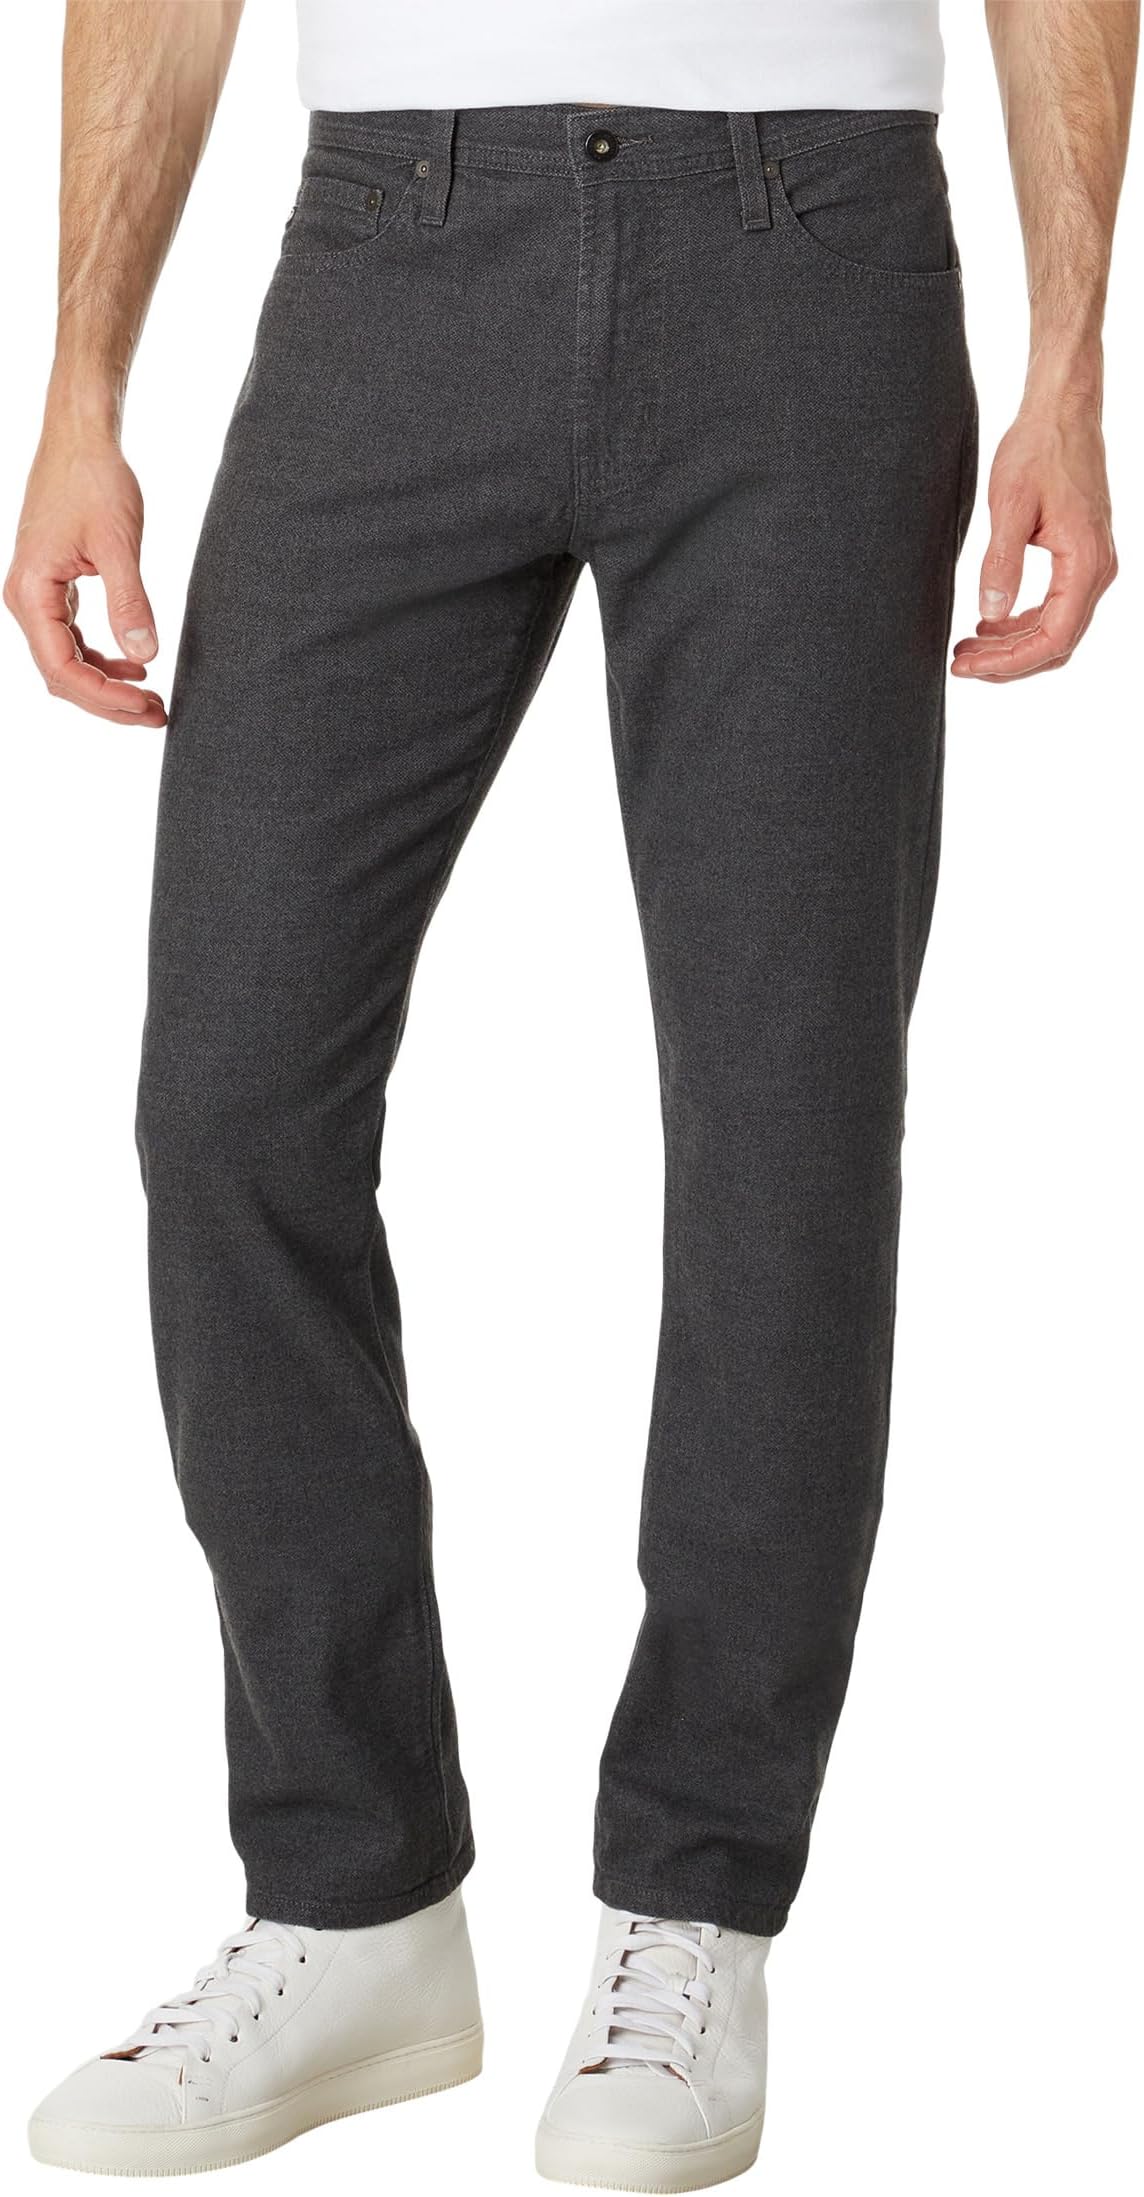 Узкие брюки прямого кроя Everett AG Jeans, цвет Anthracite джинсы эластичного прямого кроя everett ag jeans цвет bundled